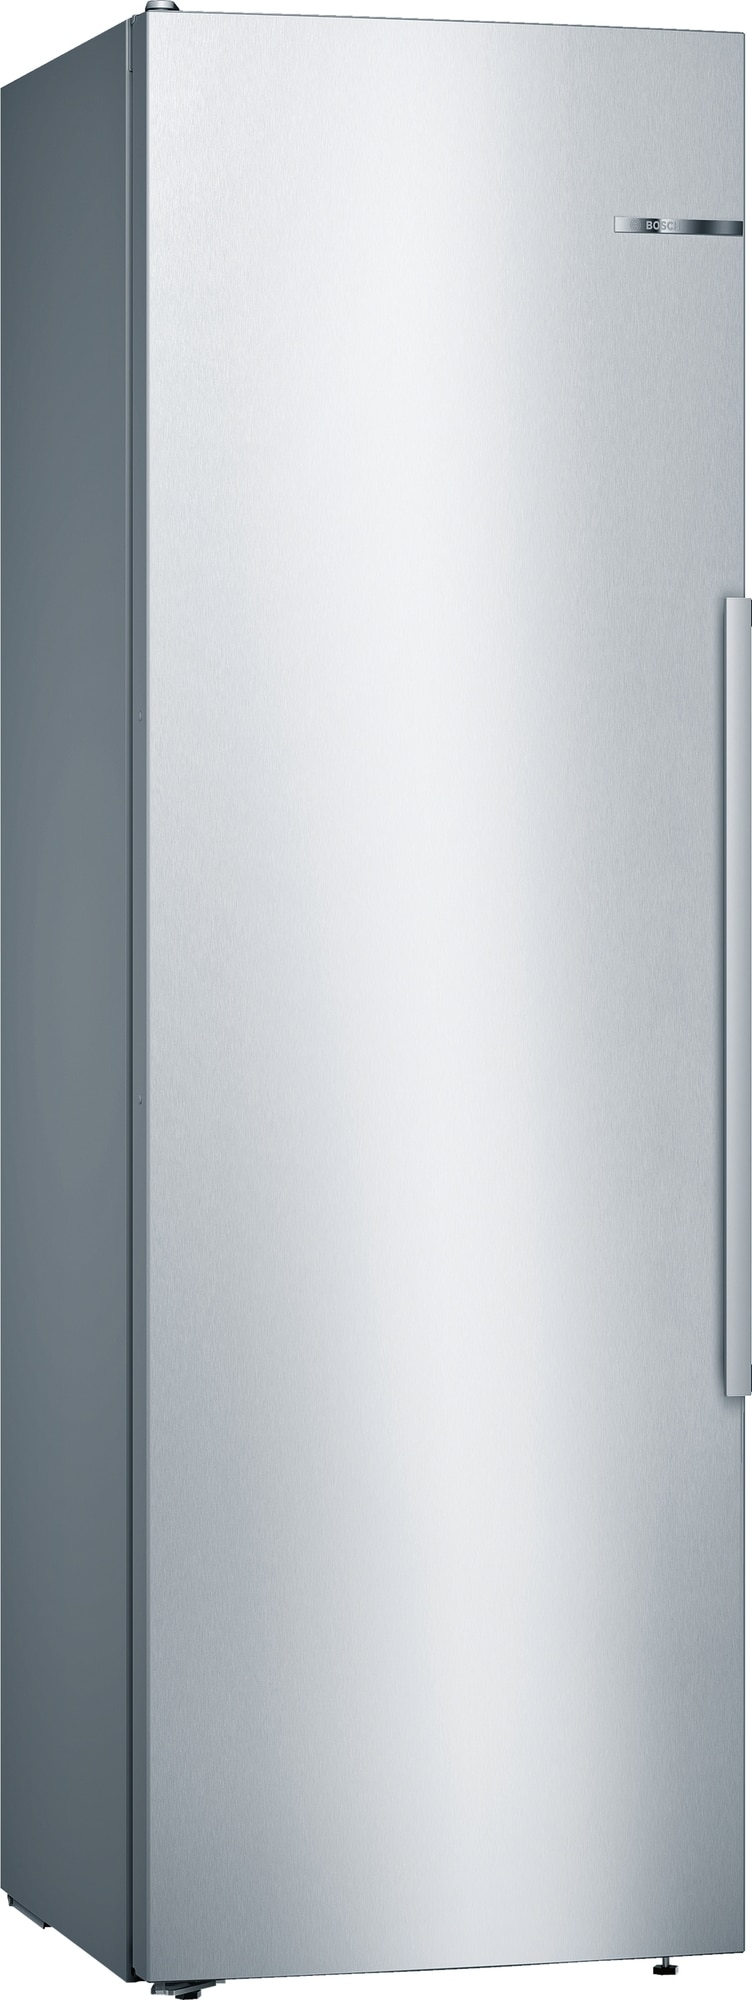 Bosch køleskab KSV36AIDP (easyclean)